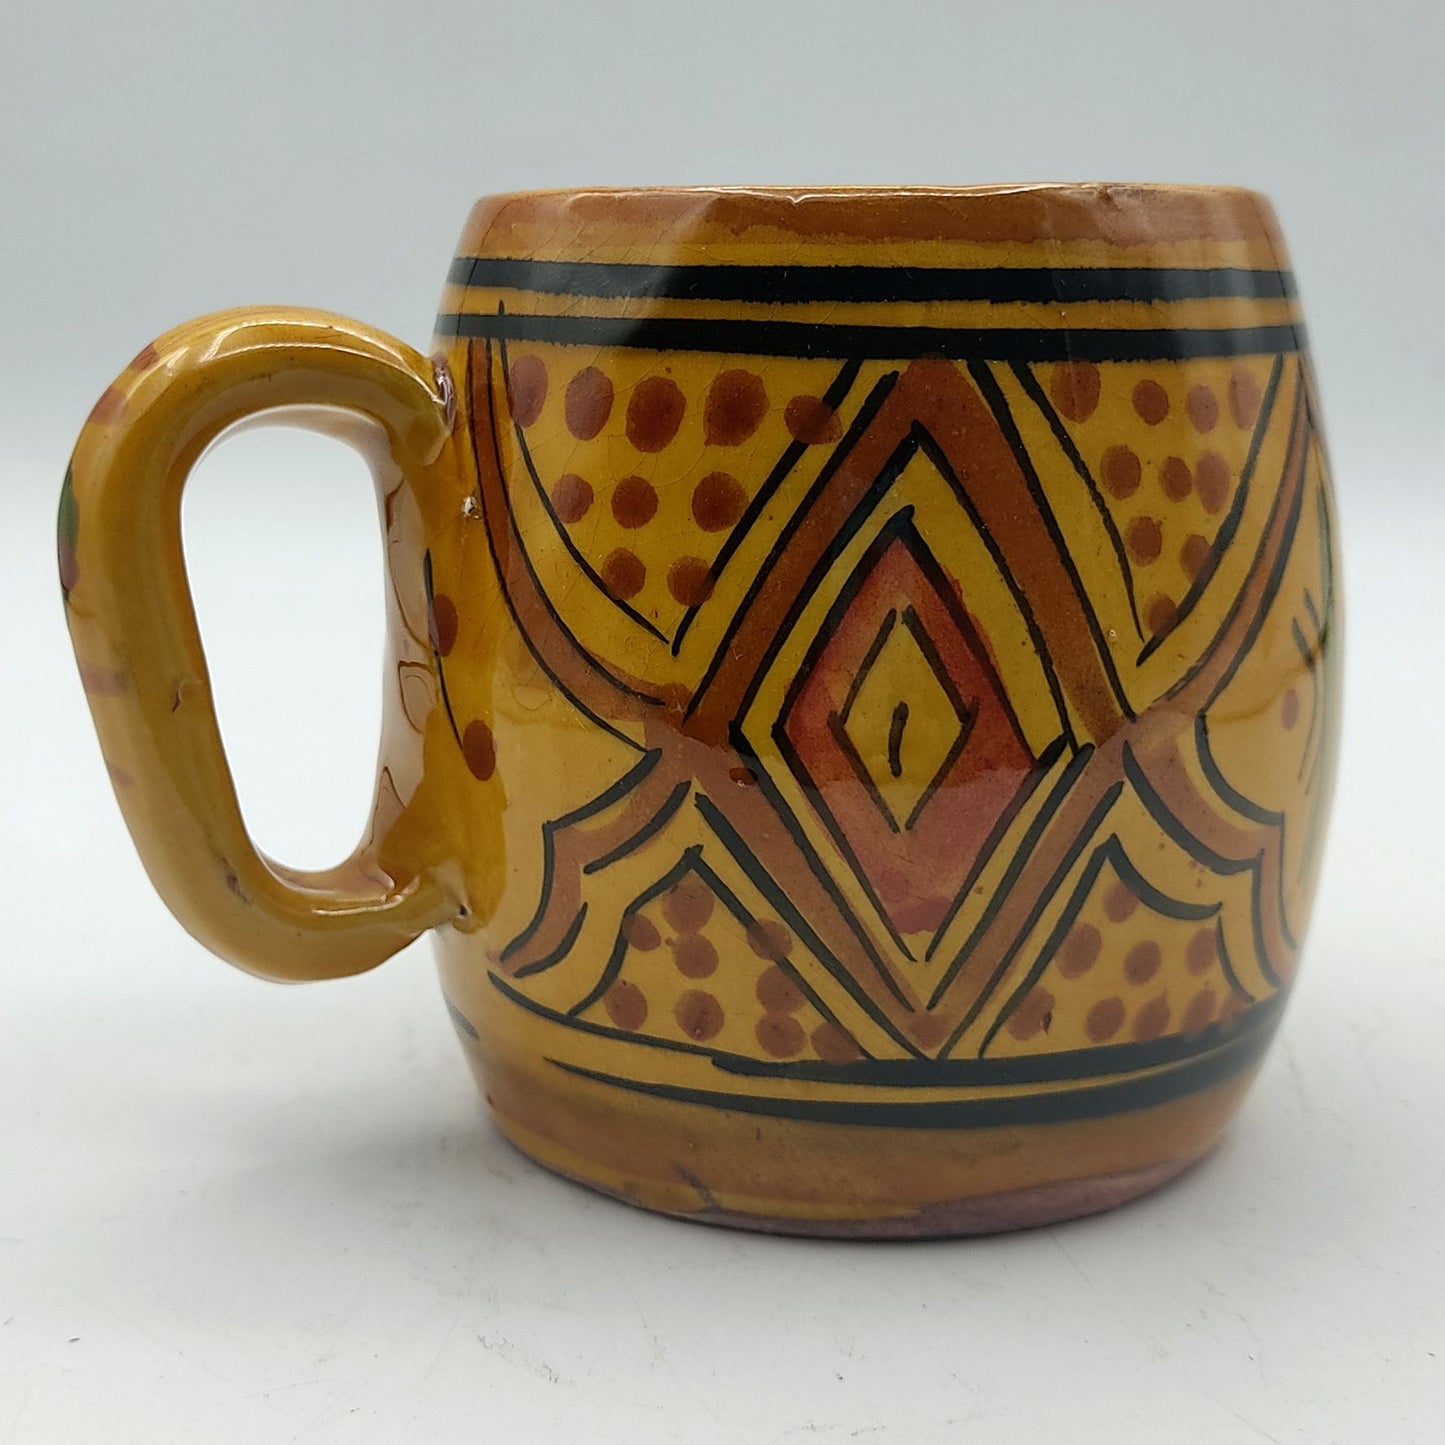 Marokkaanse Etnische Decor Glazen Mok Keramiek Terracotta 0405211028